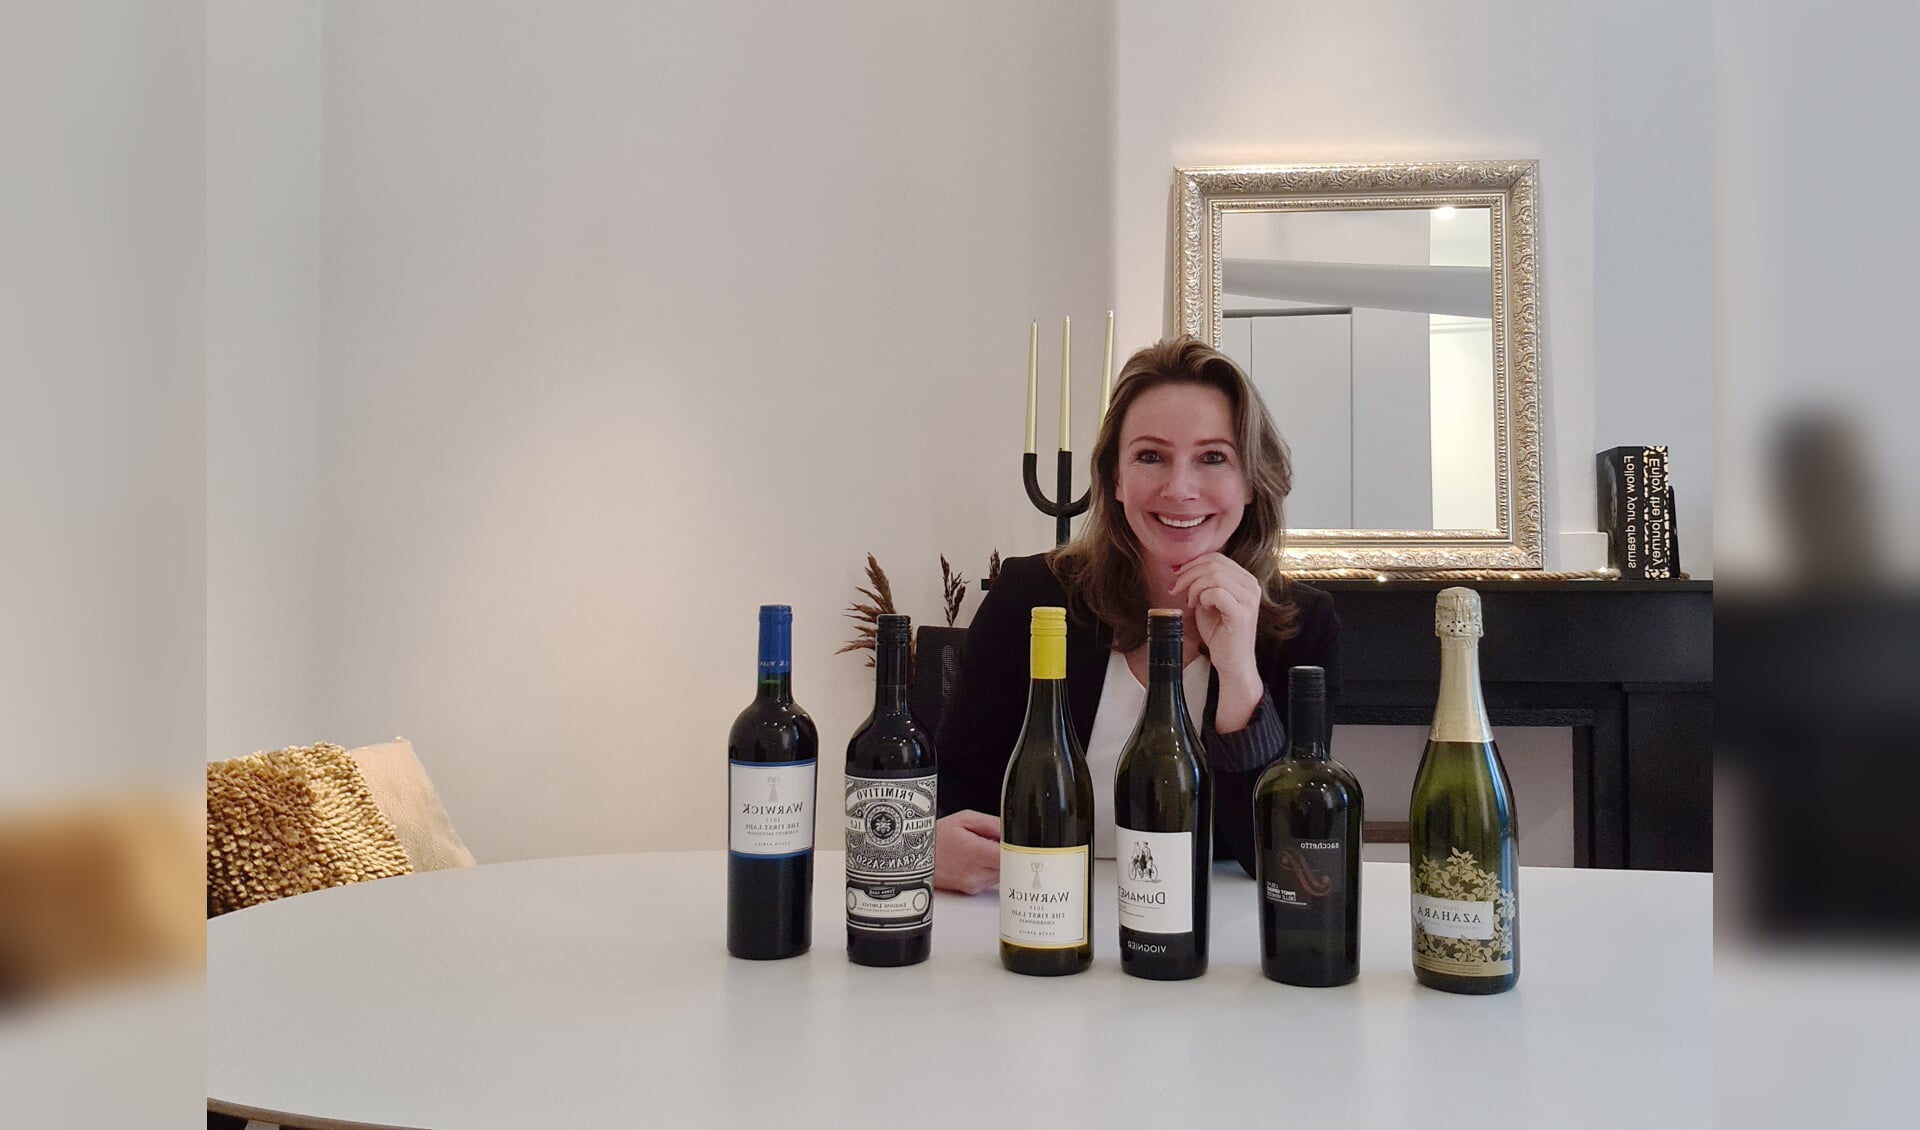  Jacqueline Wassenaar heeft voor de kerstactie van LC21 een paar heerlijke wijnen geselecteerd. 